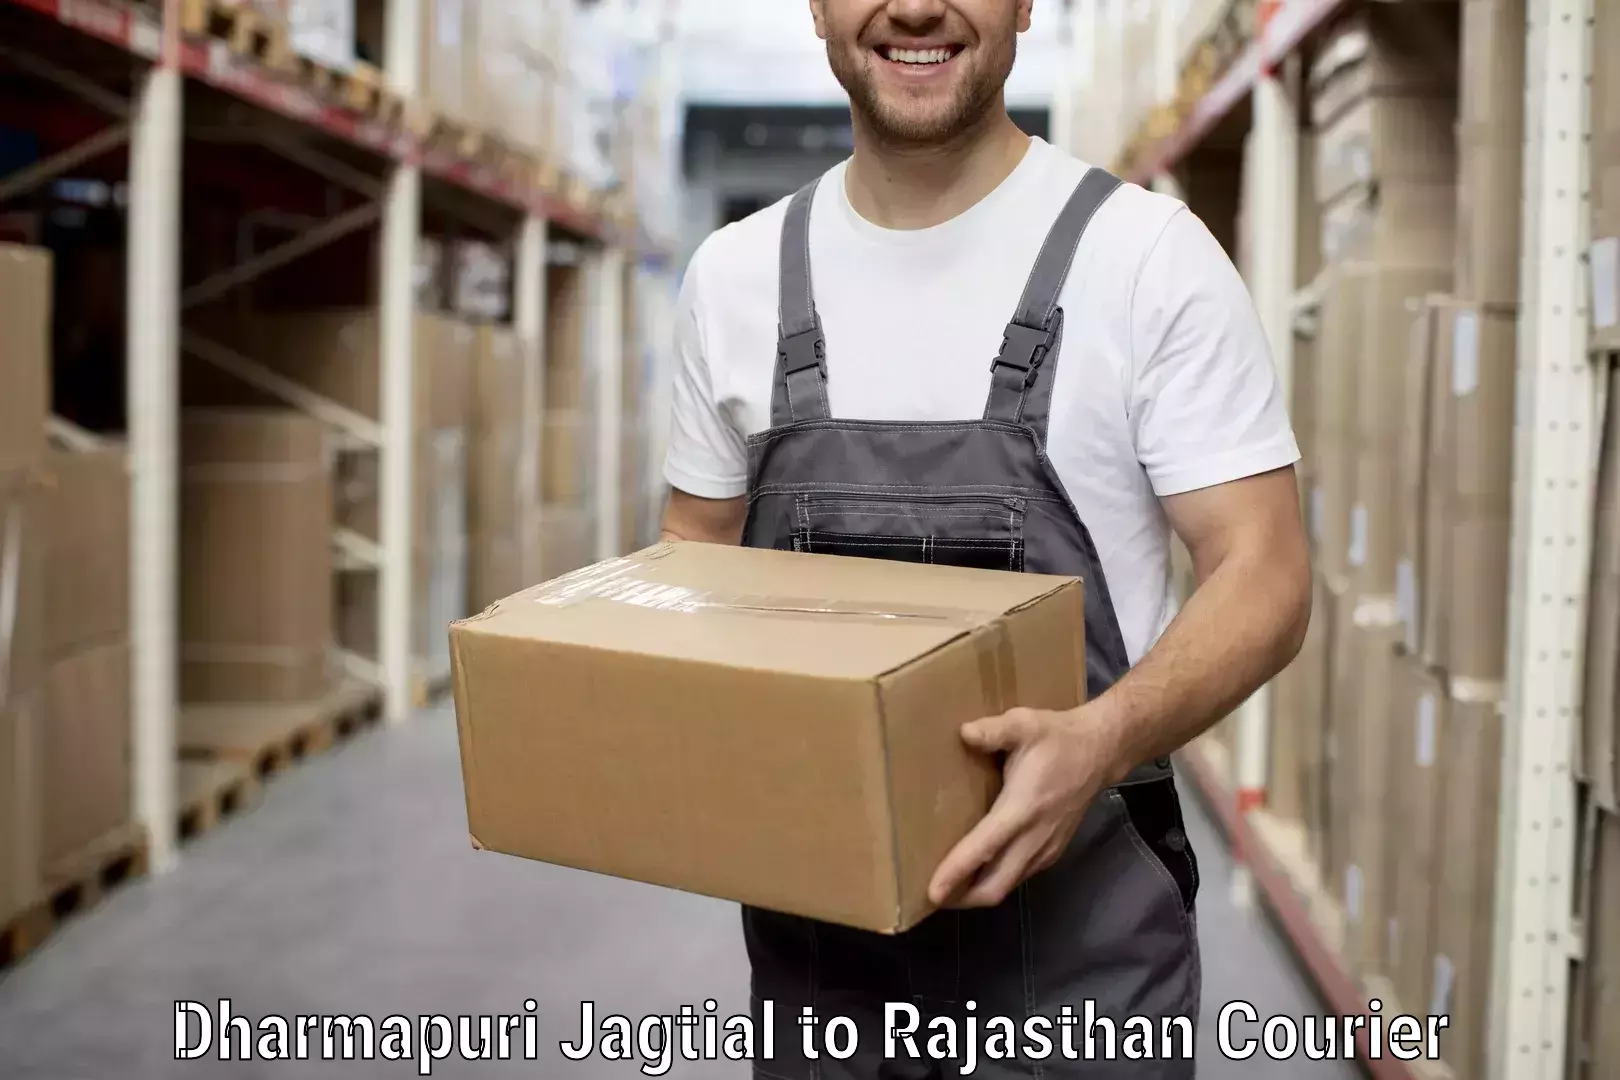 Moving and handling services in Dharmapuri Jagtial to NIT Jaipur